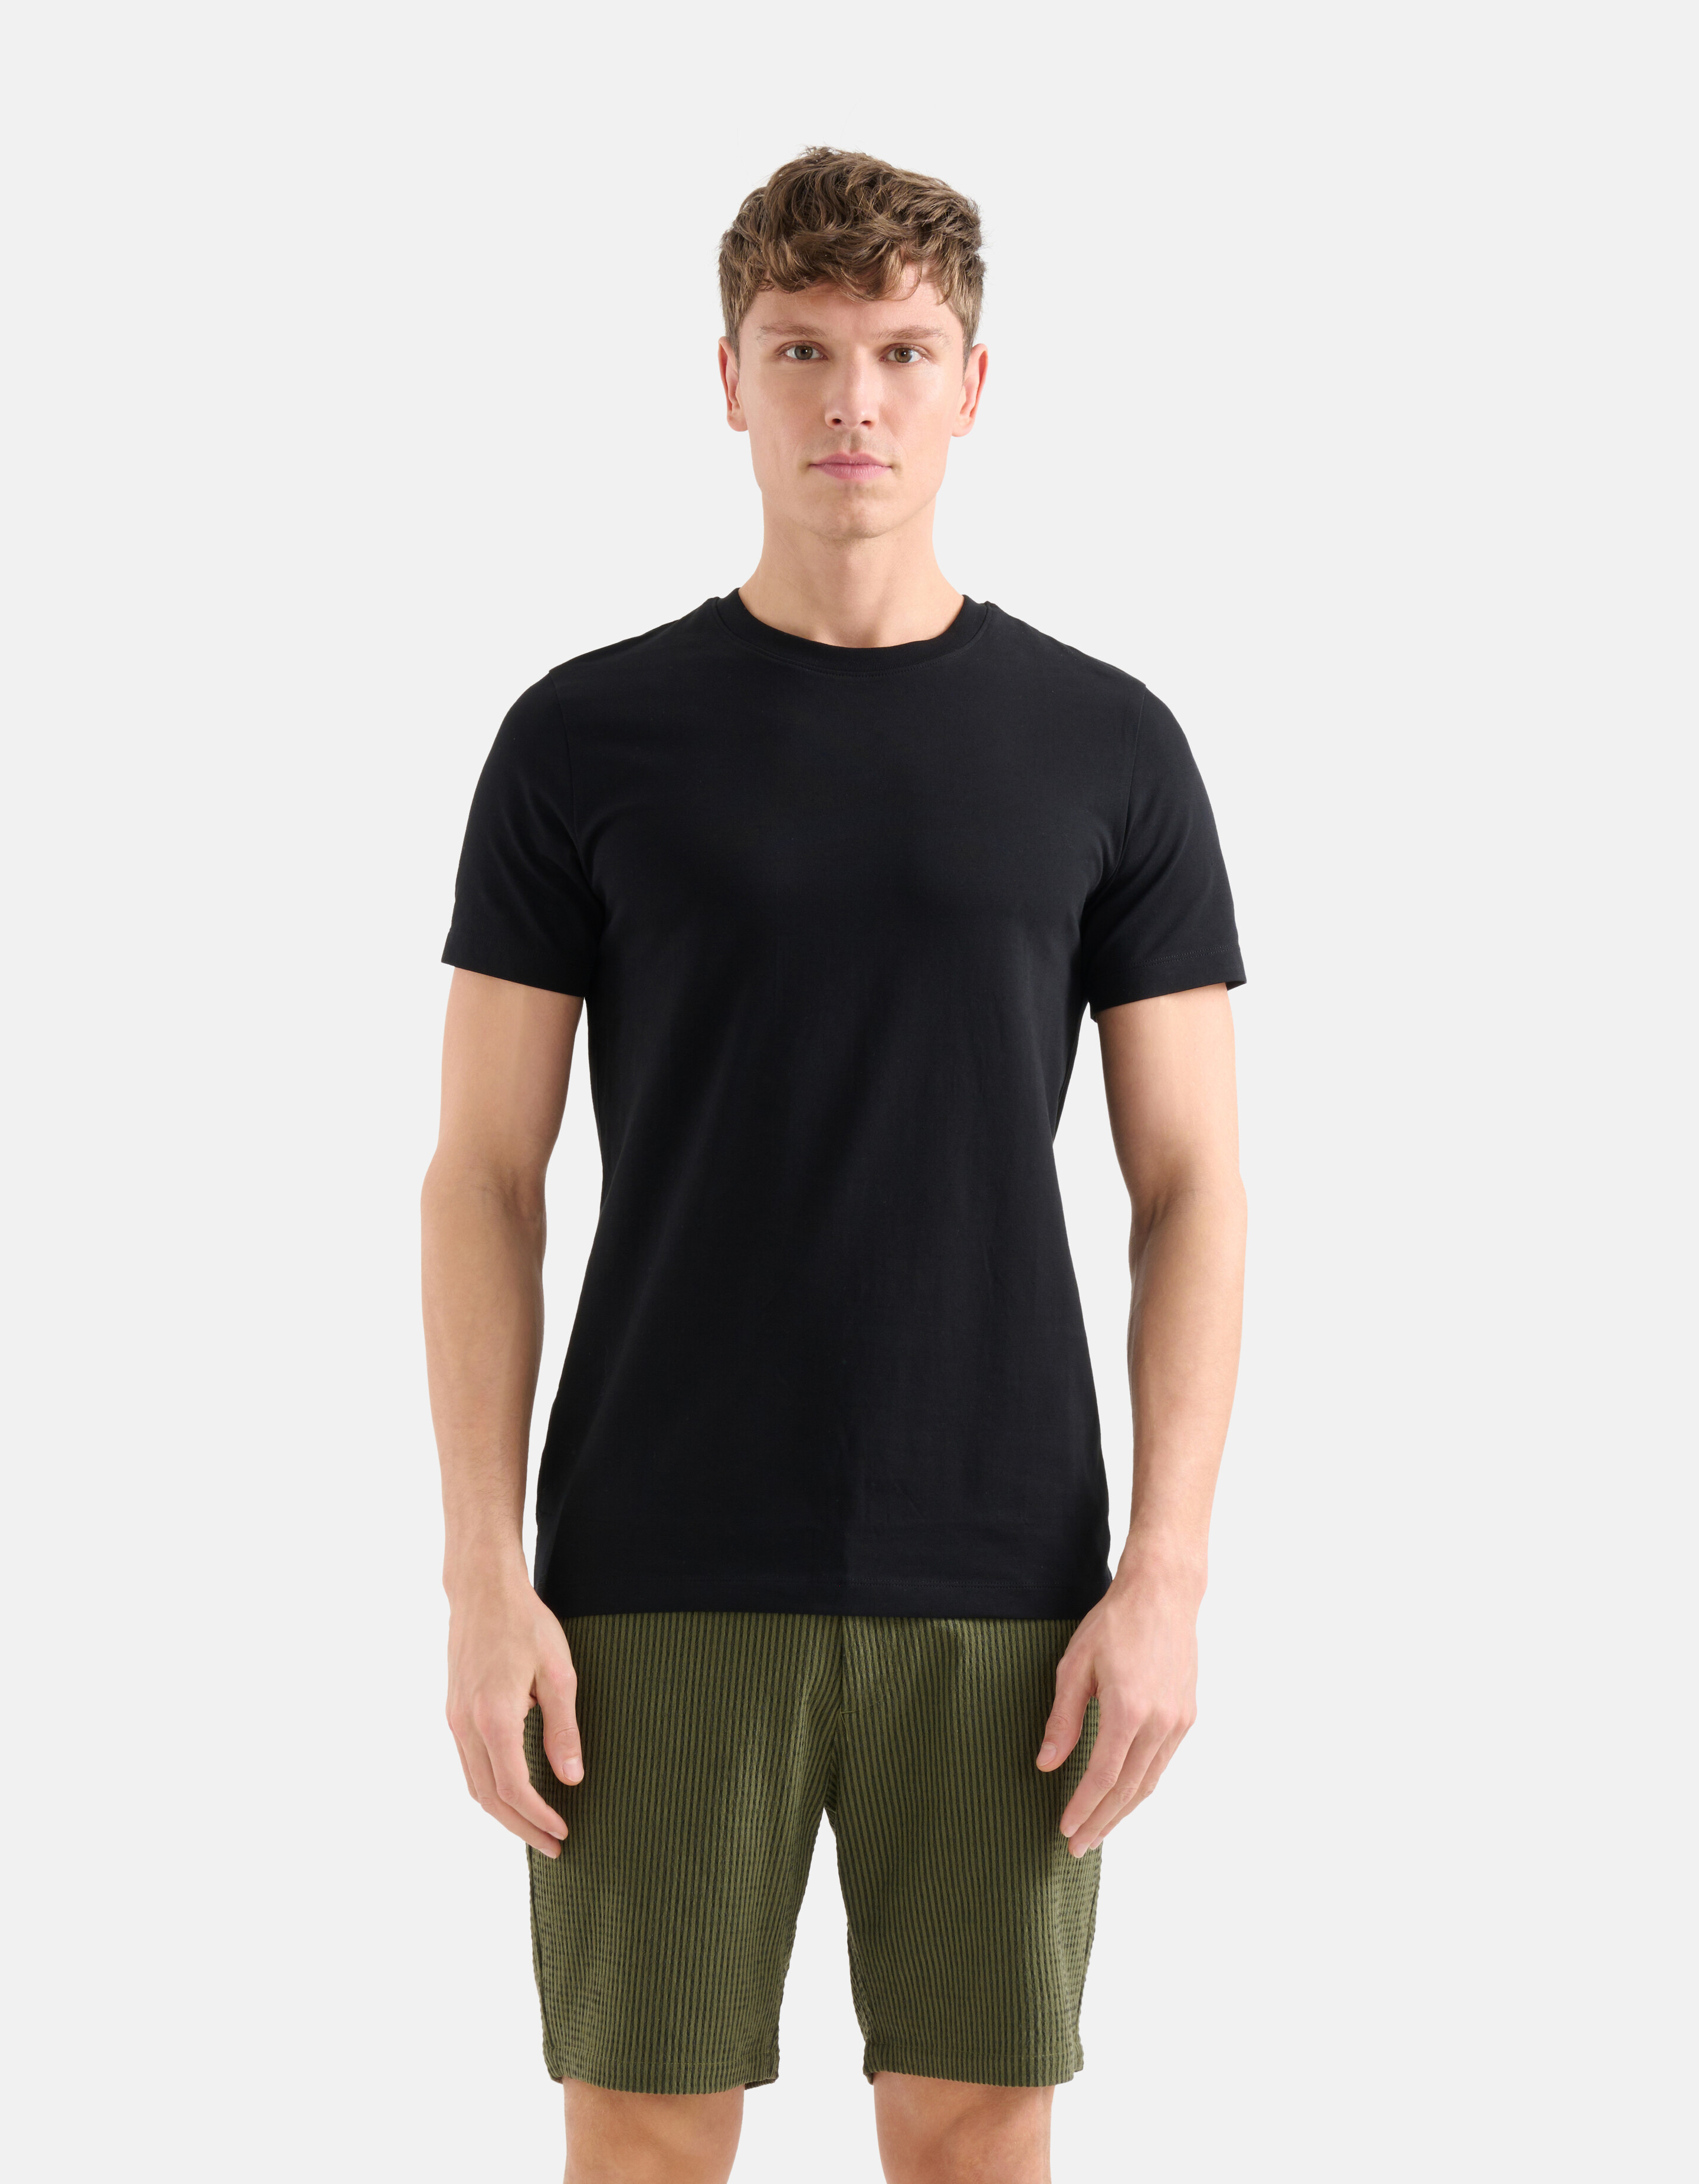 Basis T-shirt Zwart Refill